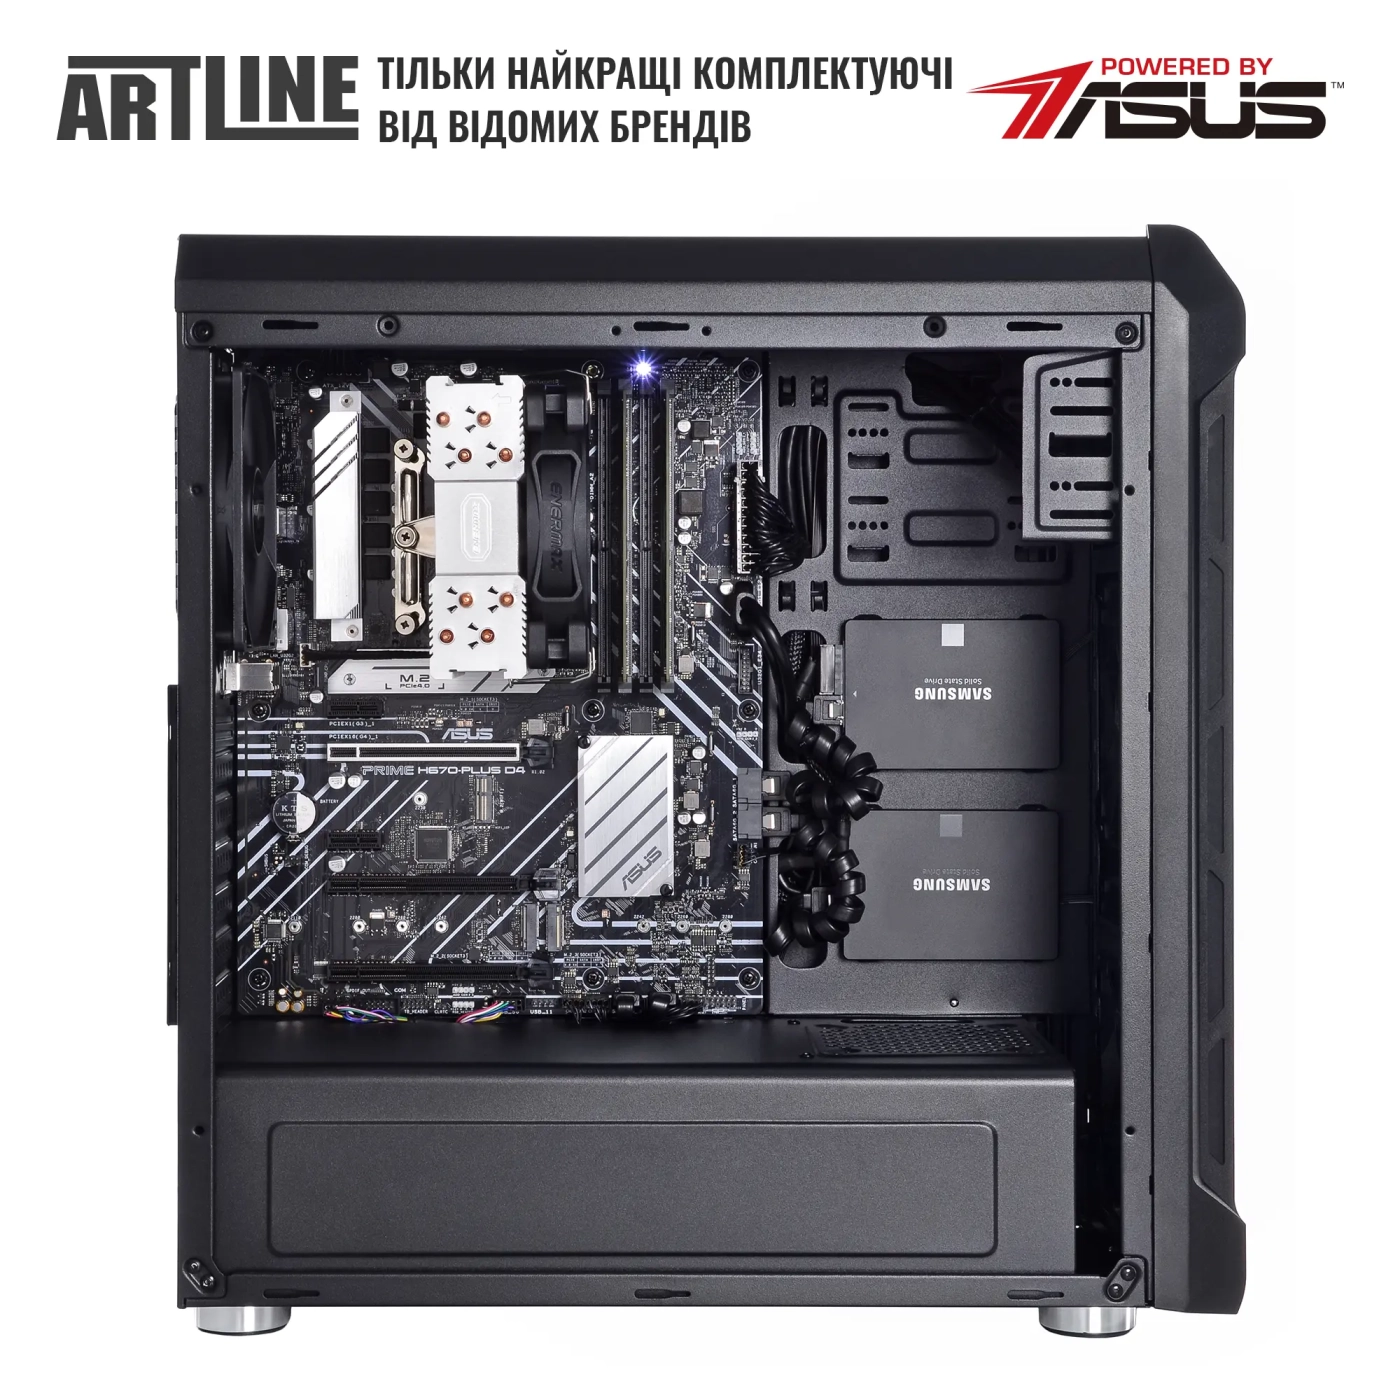 Купить Сервер ARTLINE Business T25 (T25v42) - фото 4